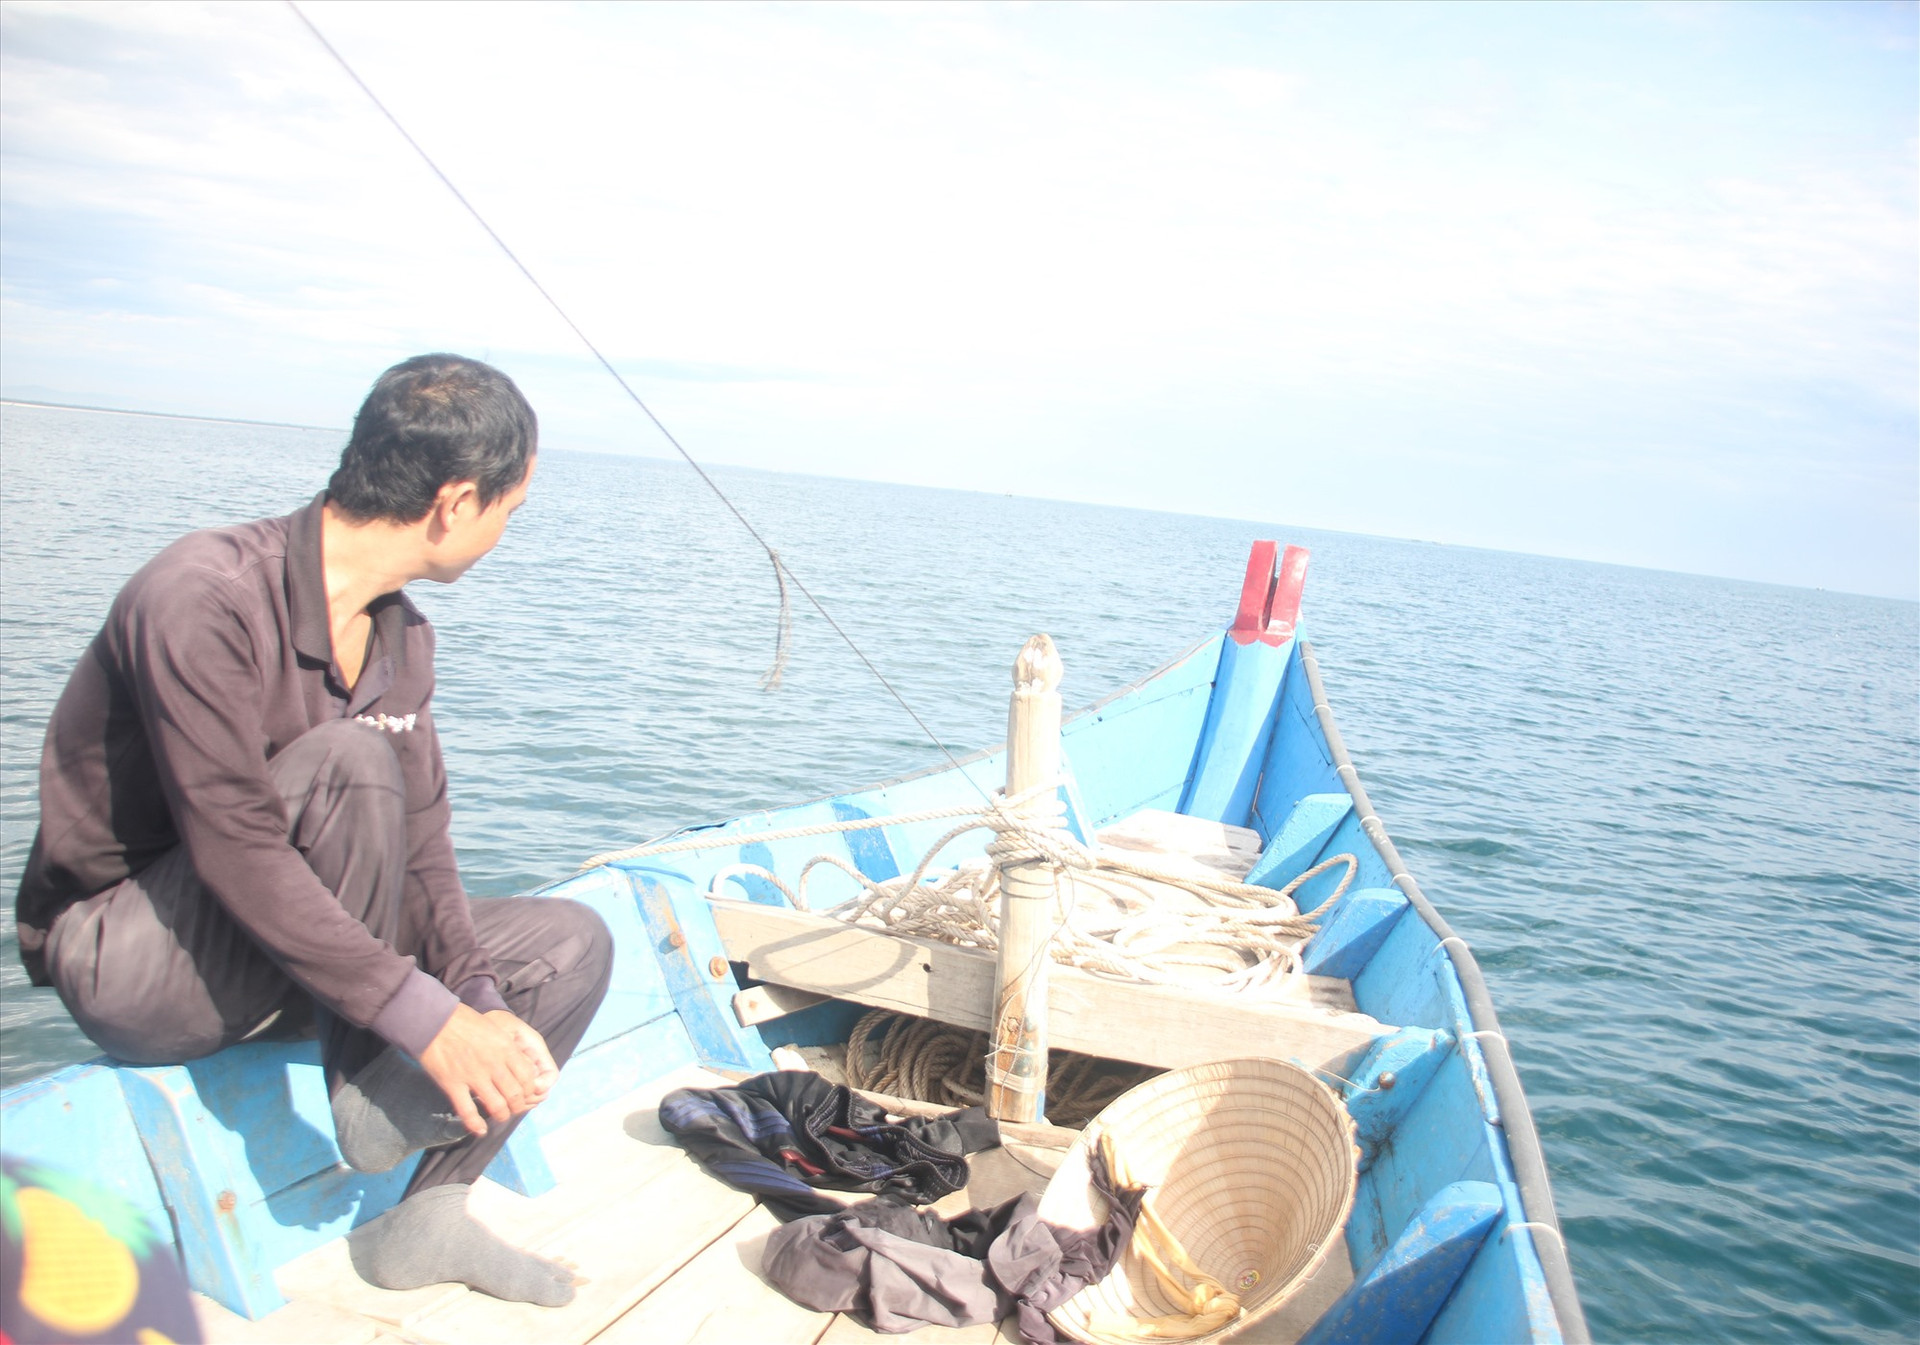 Ngư dân khai thác thủy hải sản gần bờ thường sử dụng các loại túi nhựa đựng thức ăn trong ngày, rác thải bị vứt xuống biển. Ảnh: H.Q